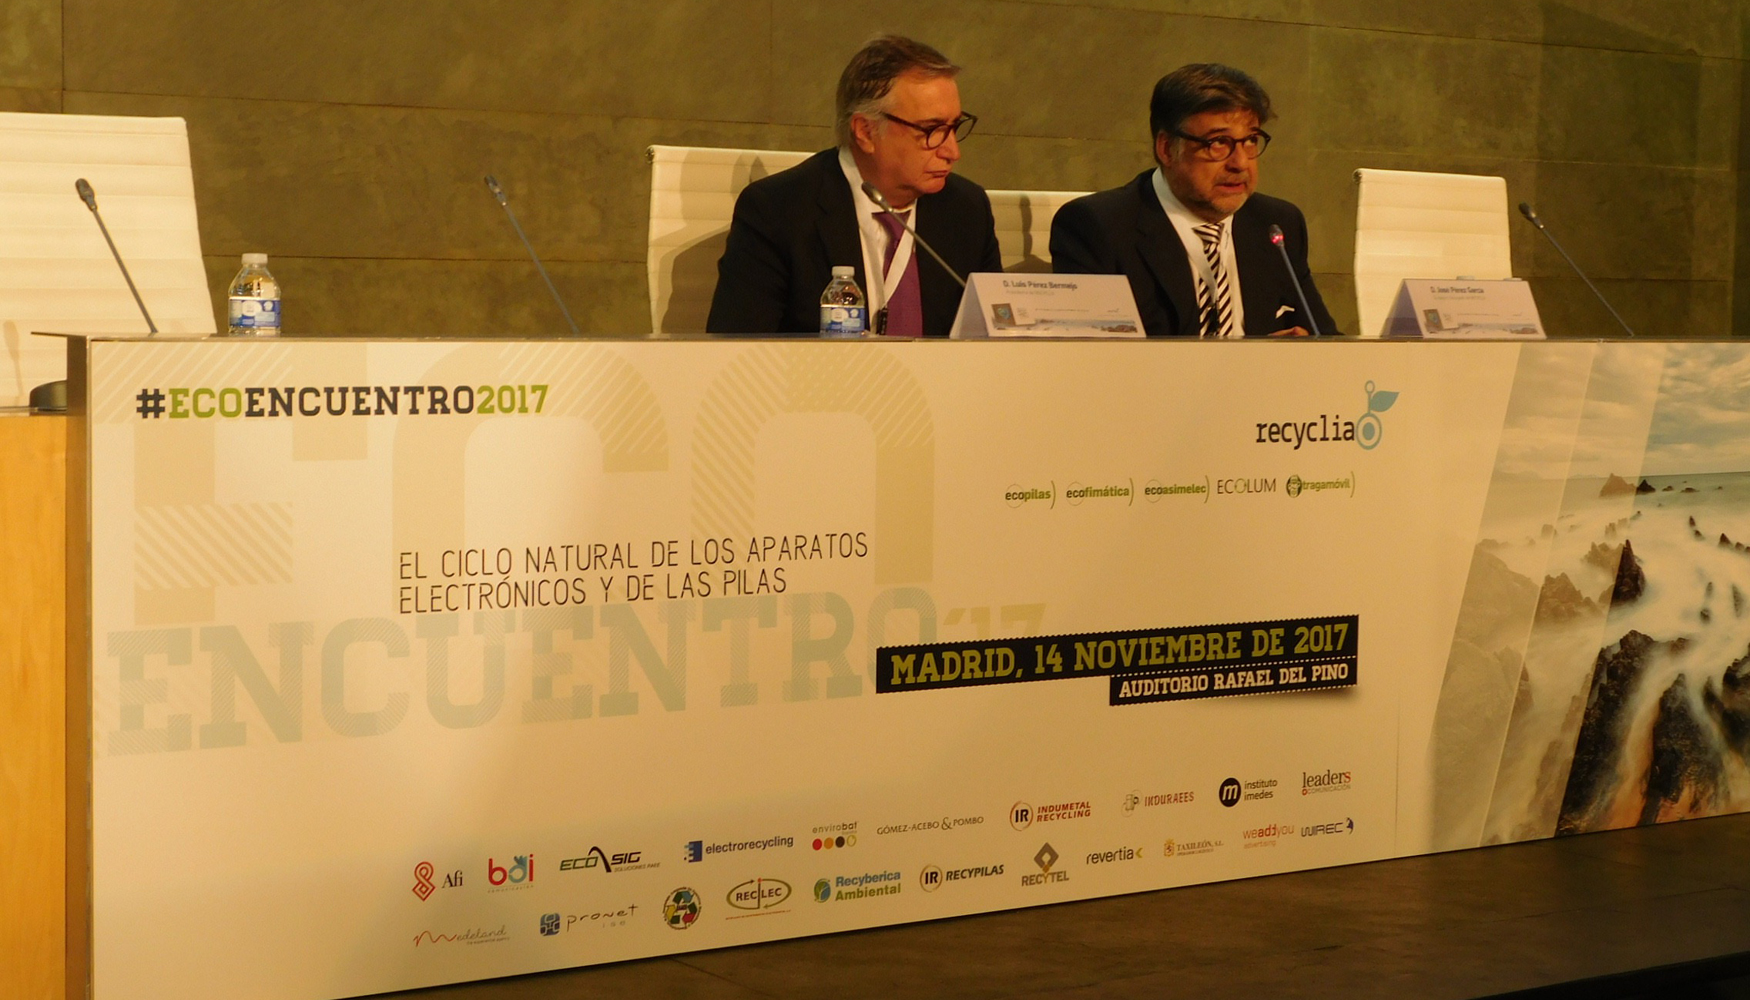 De izquierda a derecha: Luis Prez Bermejo, presidente de Recyclia, y Jos Prez Garca, consejero delegado de Recyclia